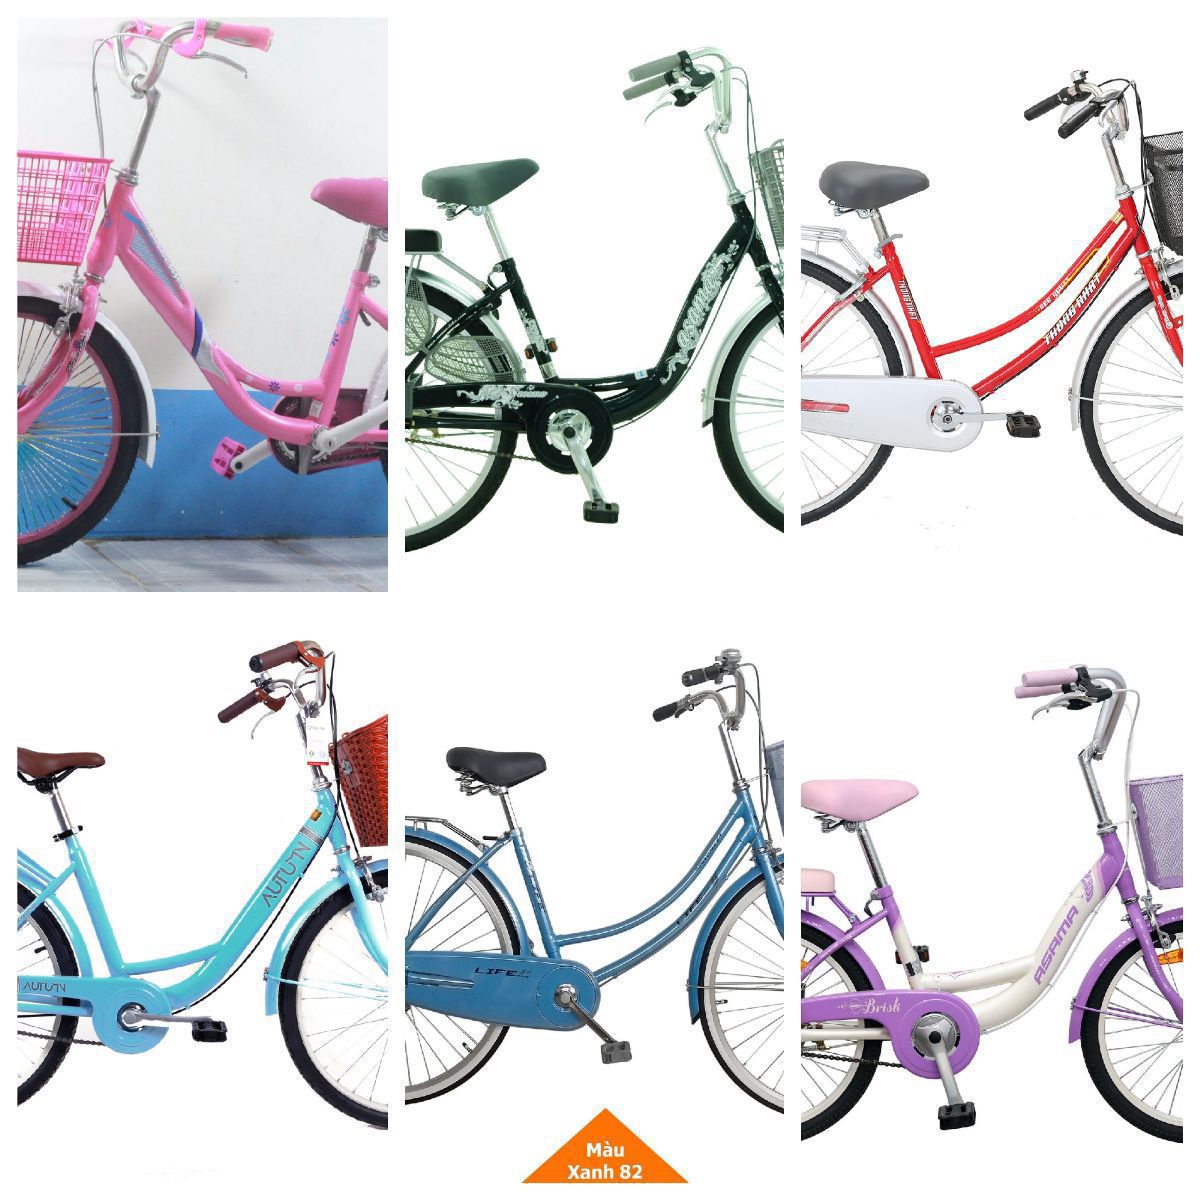 Mua xe đạp mini Nhật Bản mới tại Hà Nội Tìm kiếm cửa hàng uy tín giá bao  nhiêu